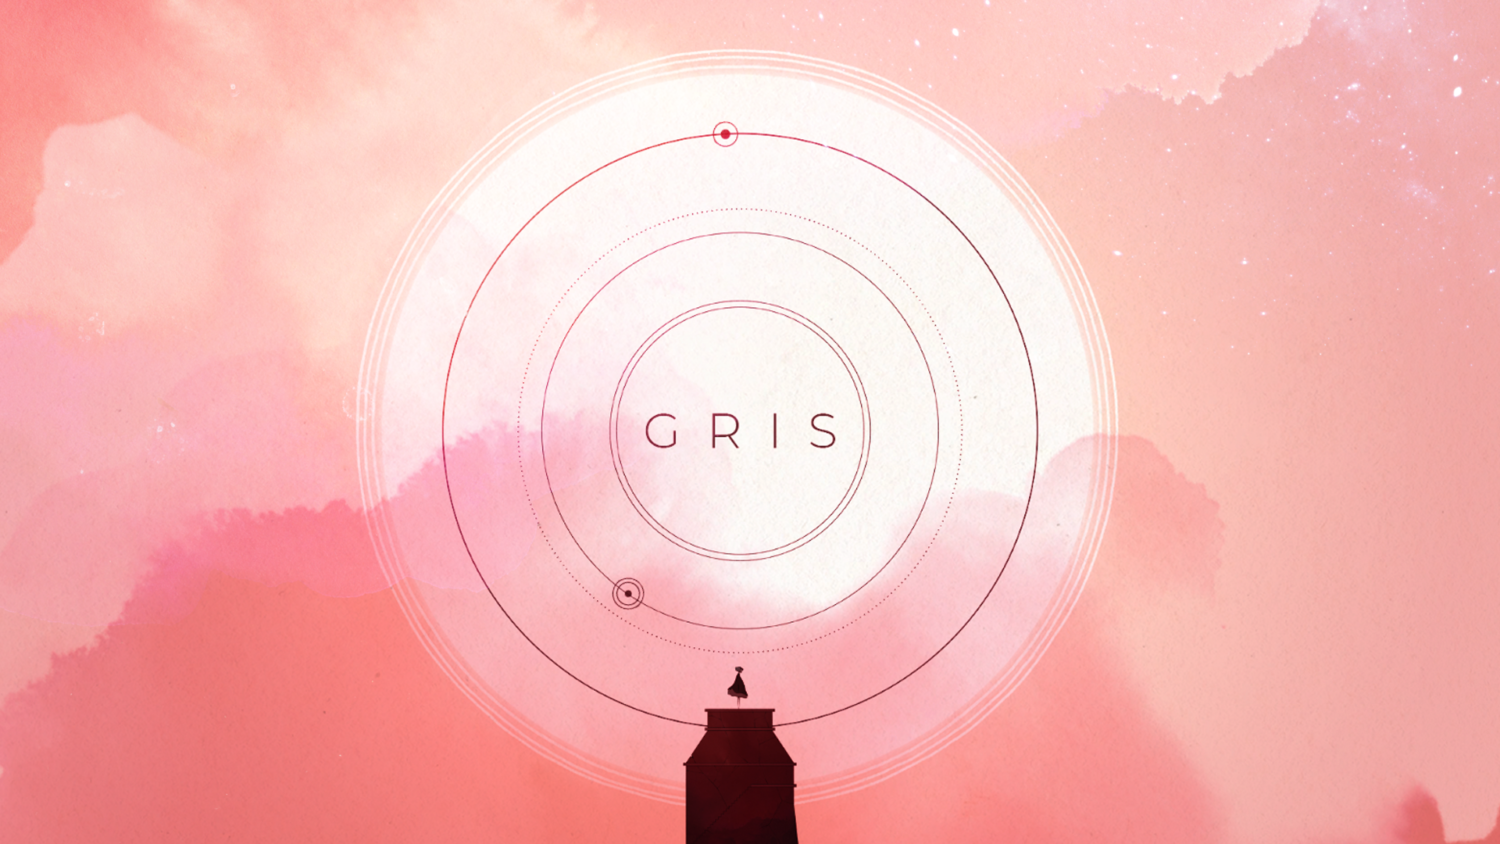 GRIS Review (Switch eShop)